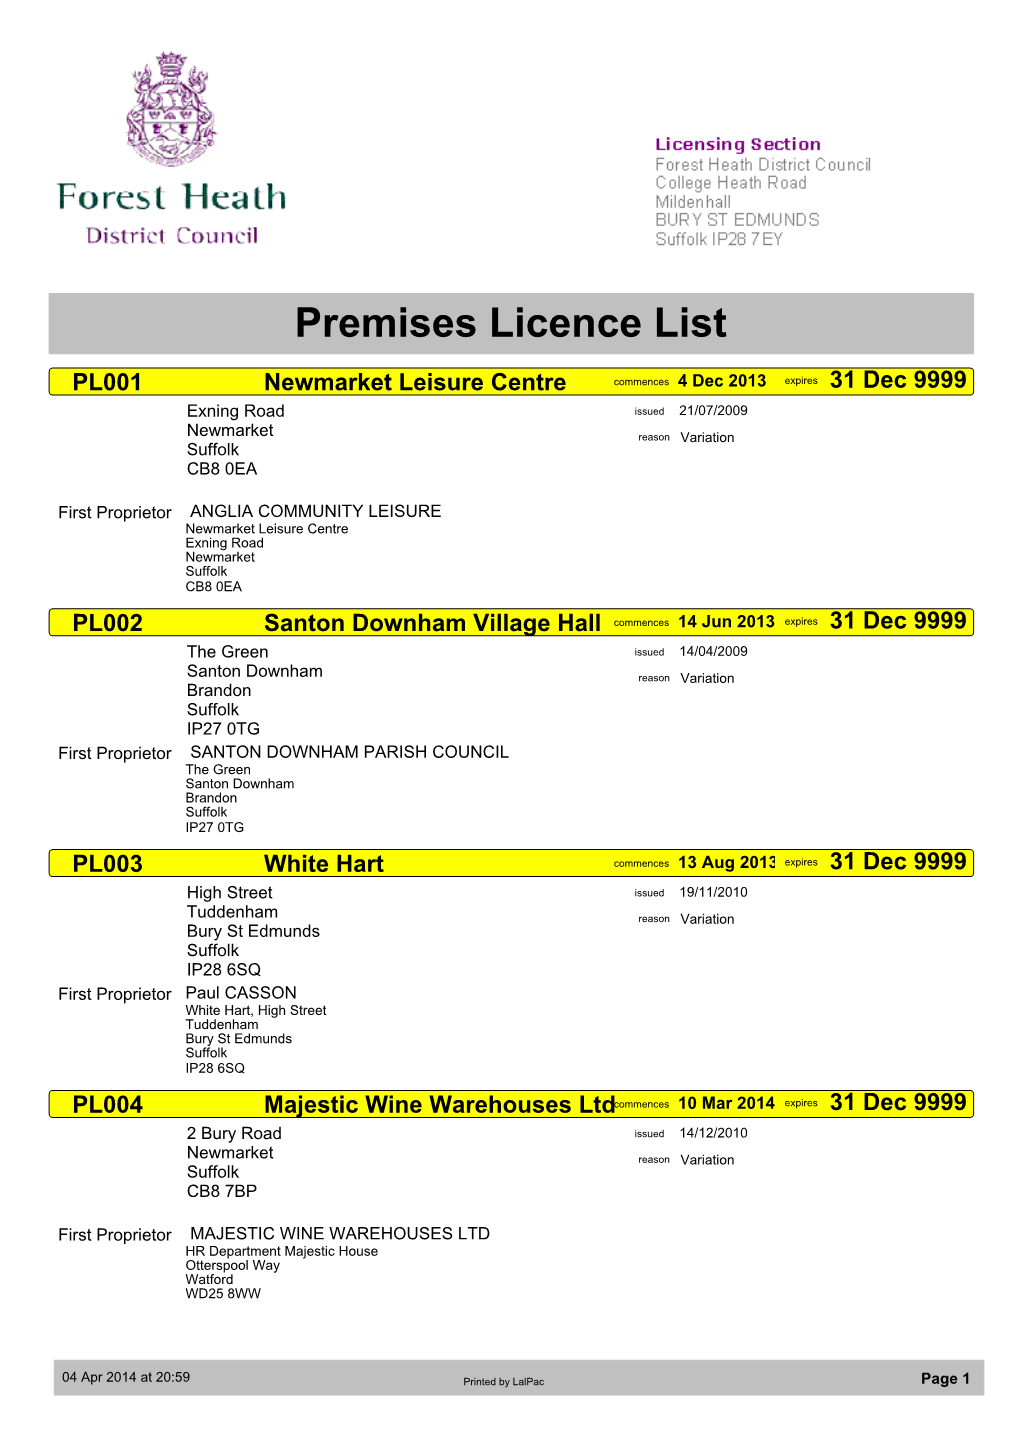 Premises Licence List